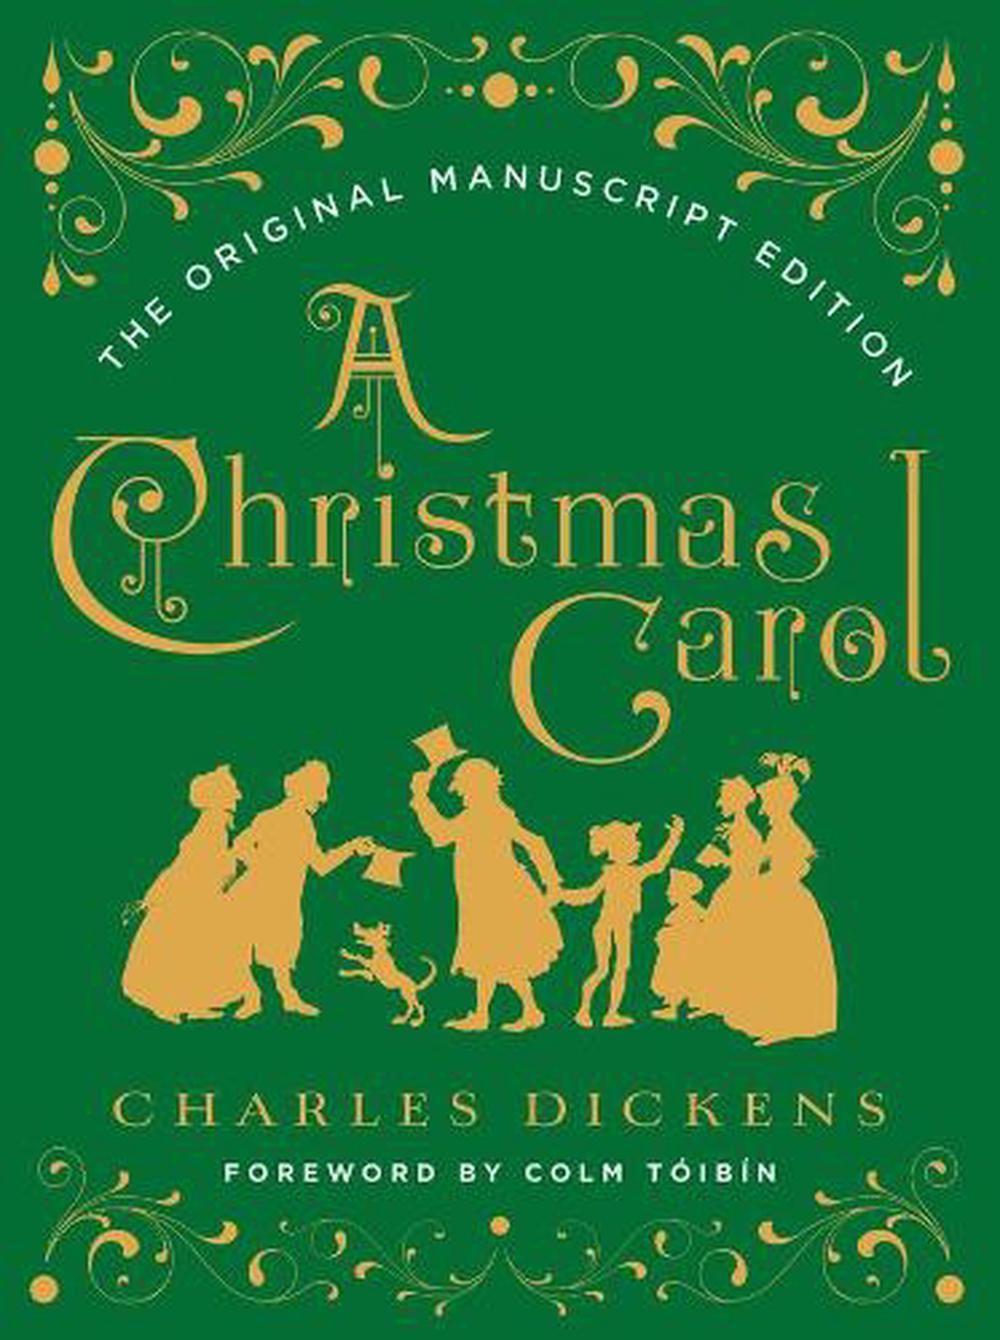 book review of a christmas carol